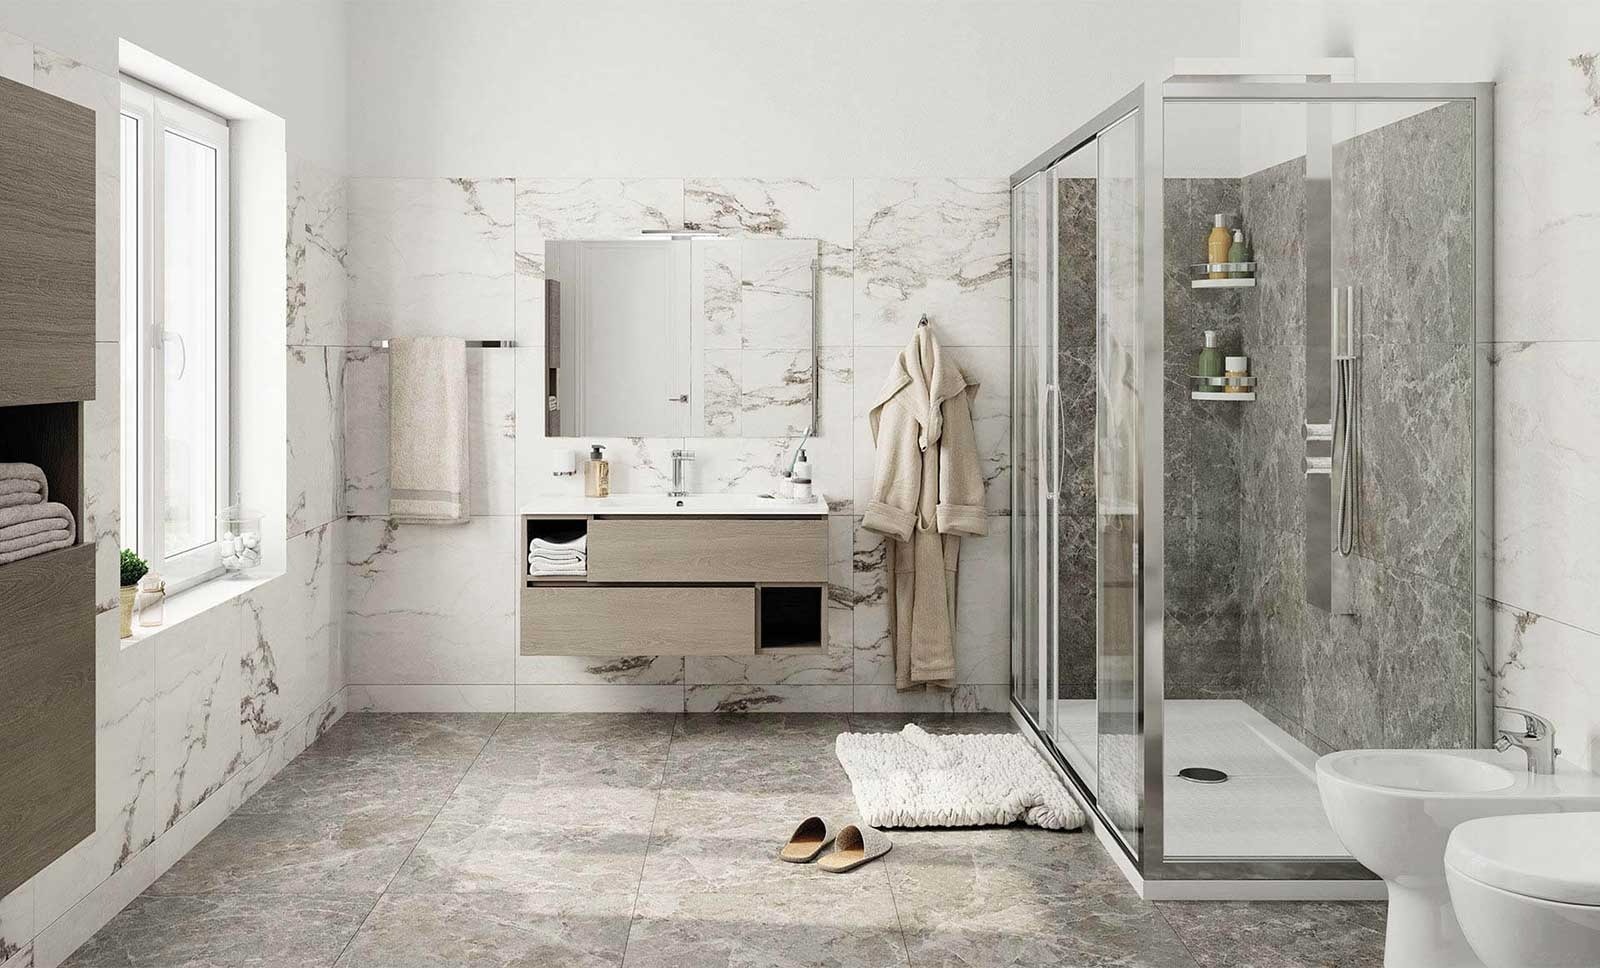 Trasformazione vasche in doccia a Napoli e Campania da oltre 30 anni, scopri i prezzi | Docciatime.it trasforma da bagno in doccia in sole 6 ore